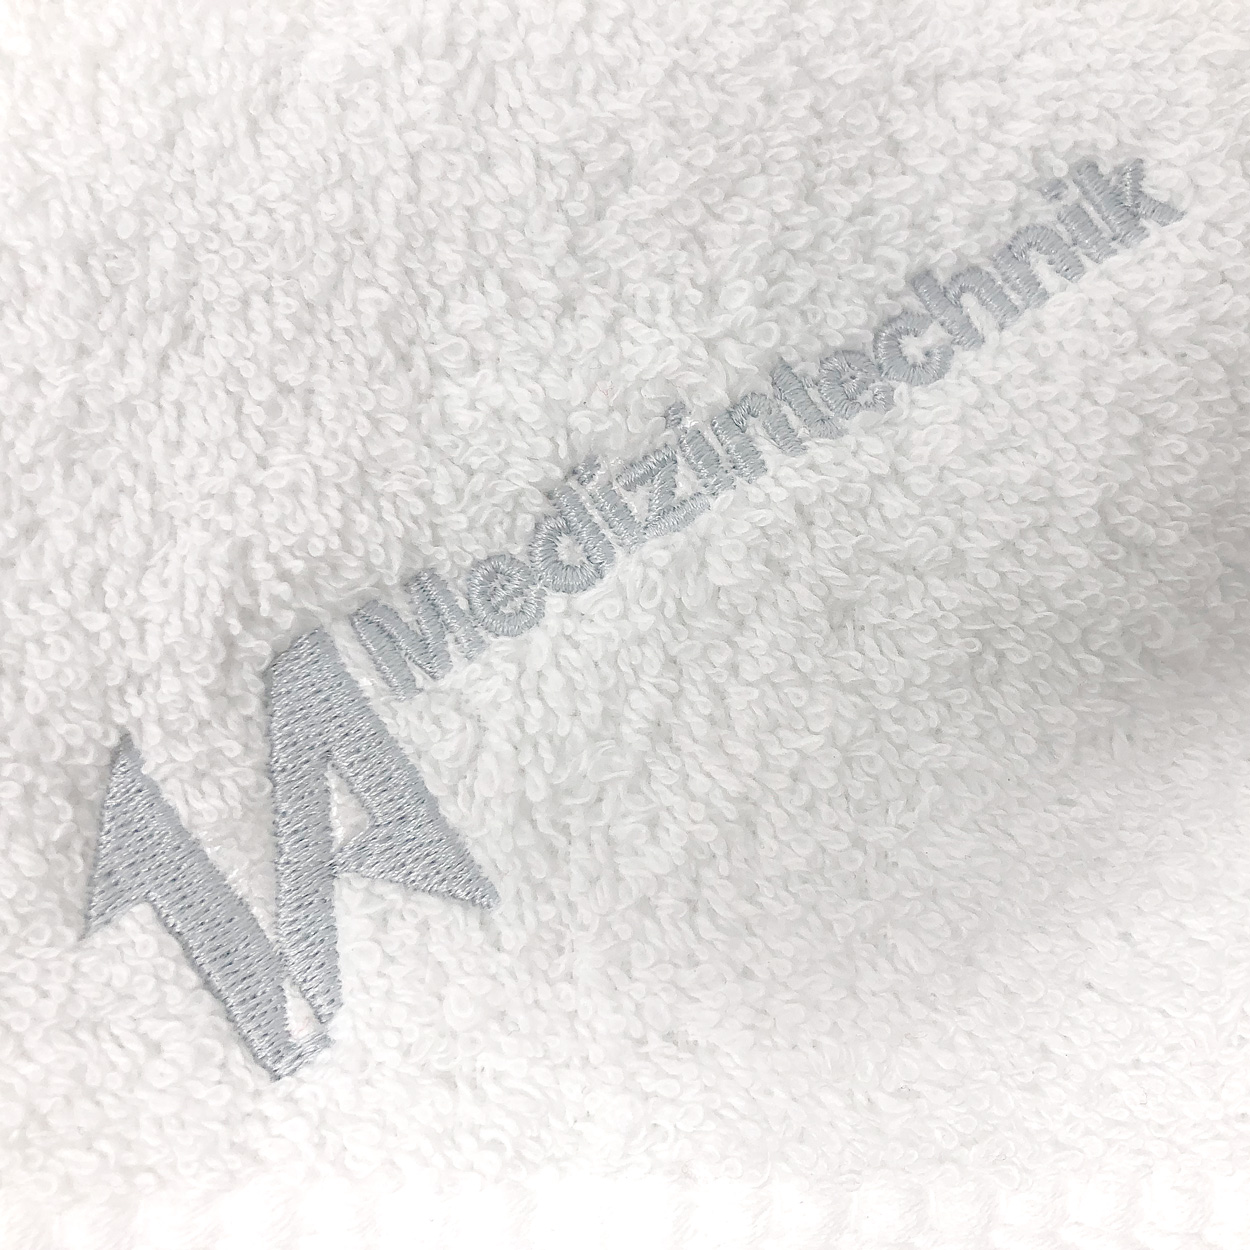 1A-Handtuch in weiß, 50 x 90 cm